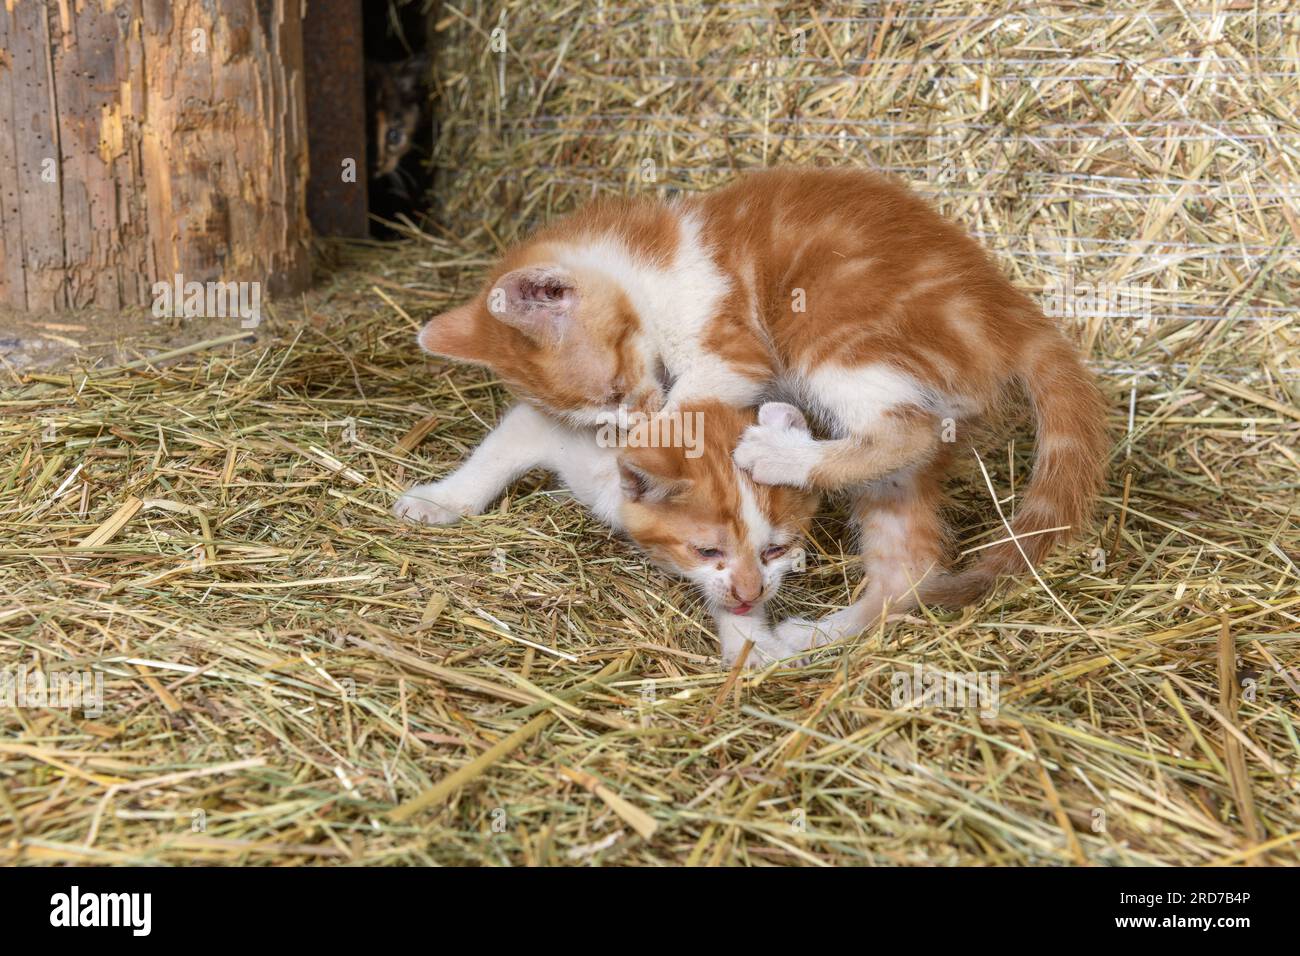 Deux chatons jouant dans une grange de ferme. Bas-Rhin, Collectivite européenne d'Alsace,Grand est, France, Europe. Banque D'Images